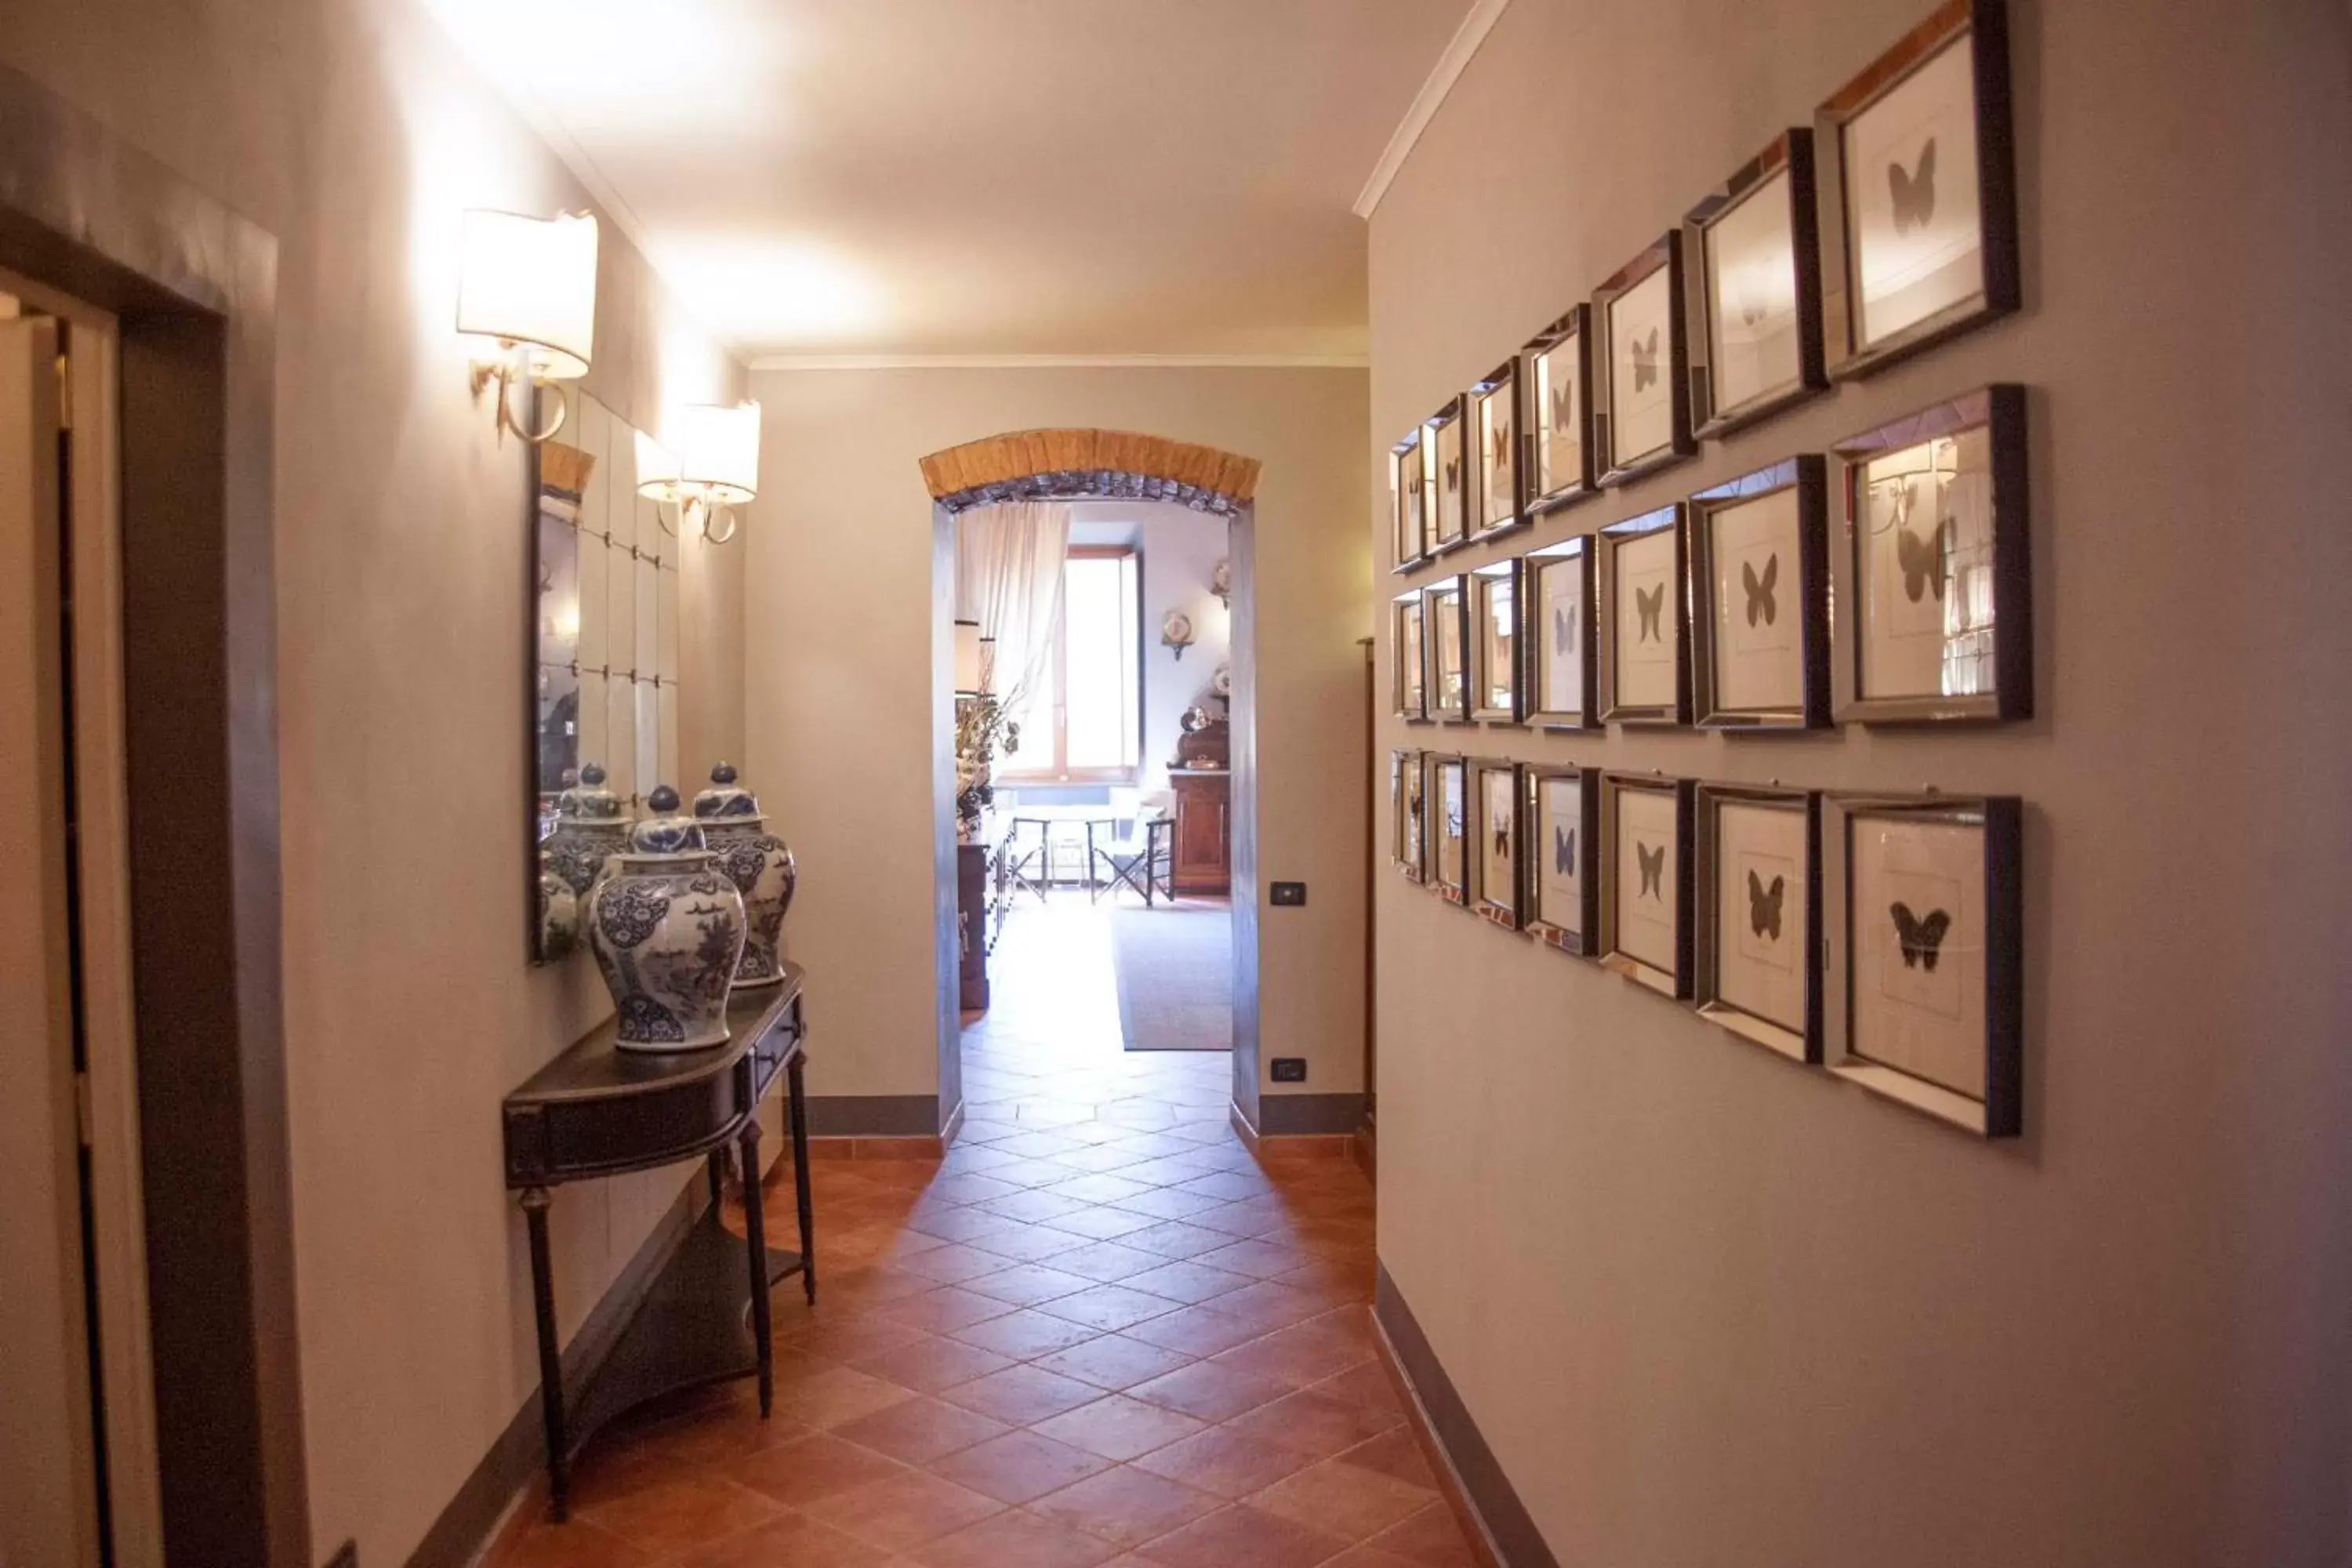 Lobby or reception in Antica Dimora De' Benci